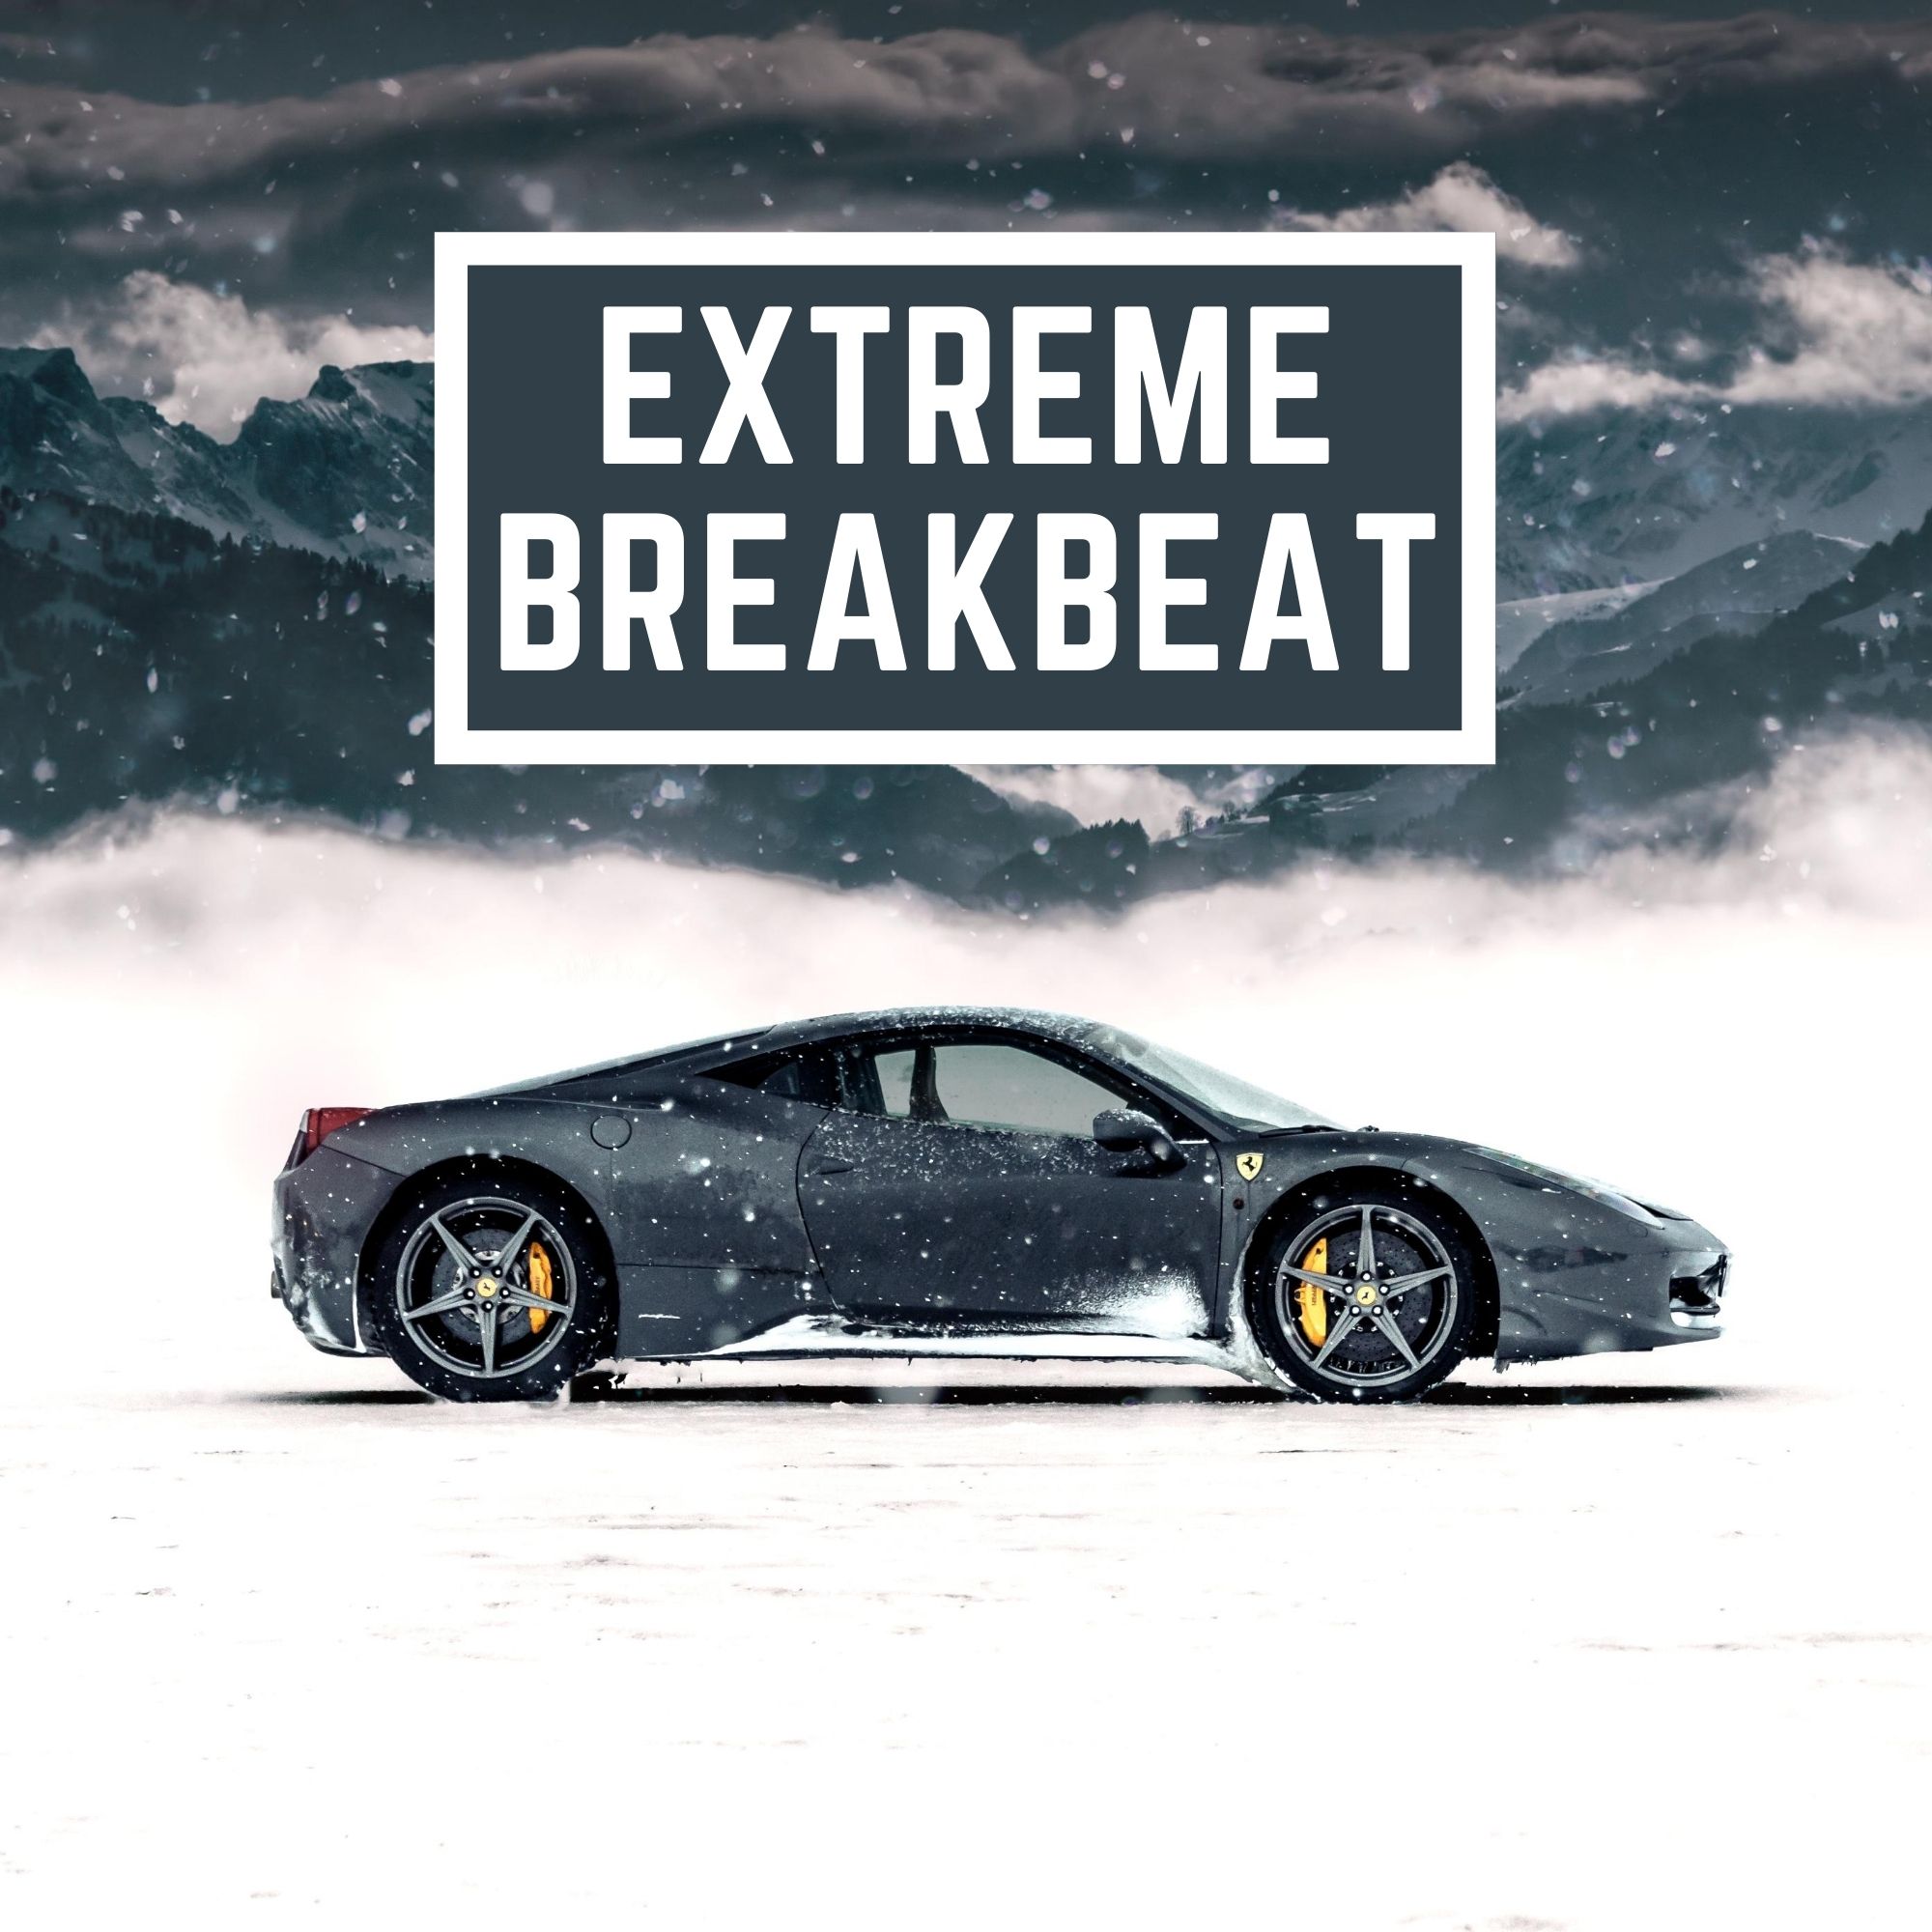 Extreme Breakbeat